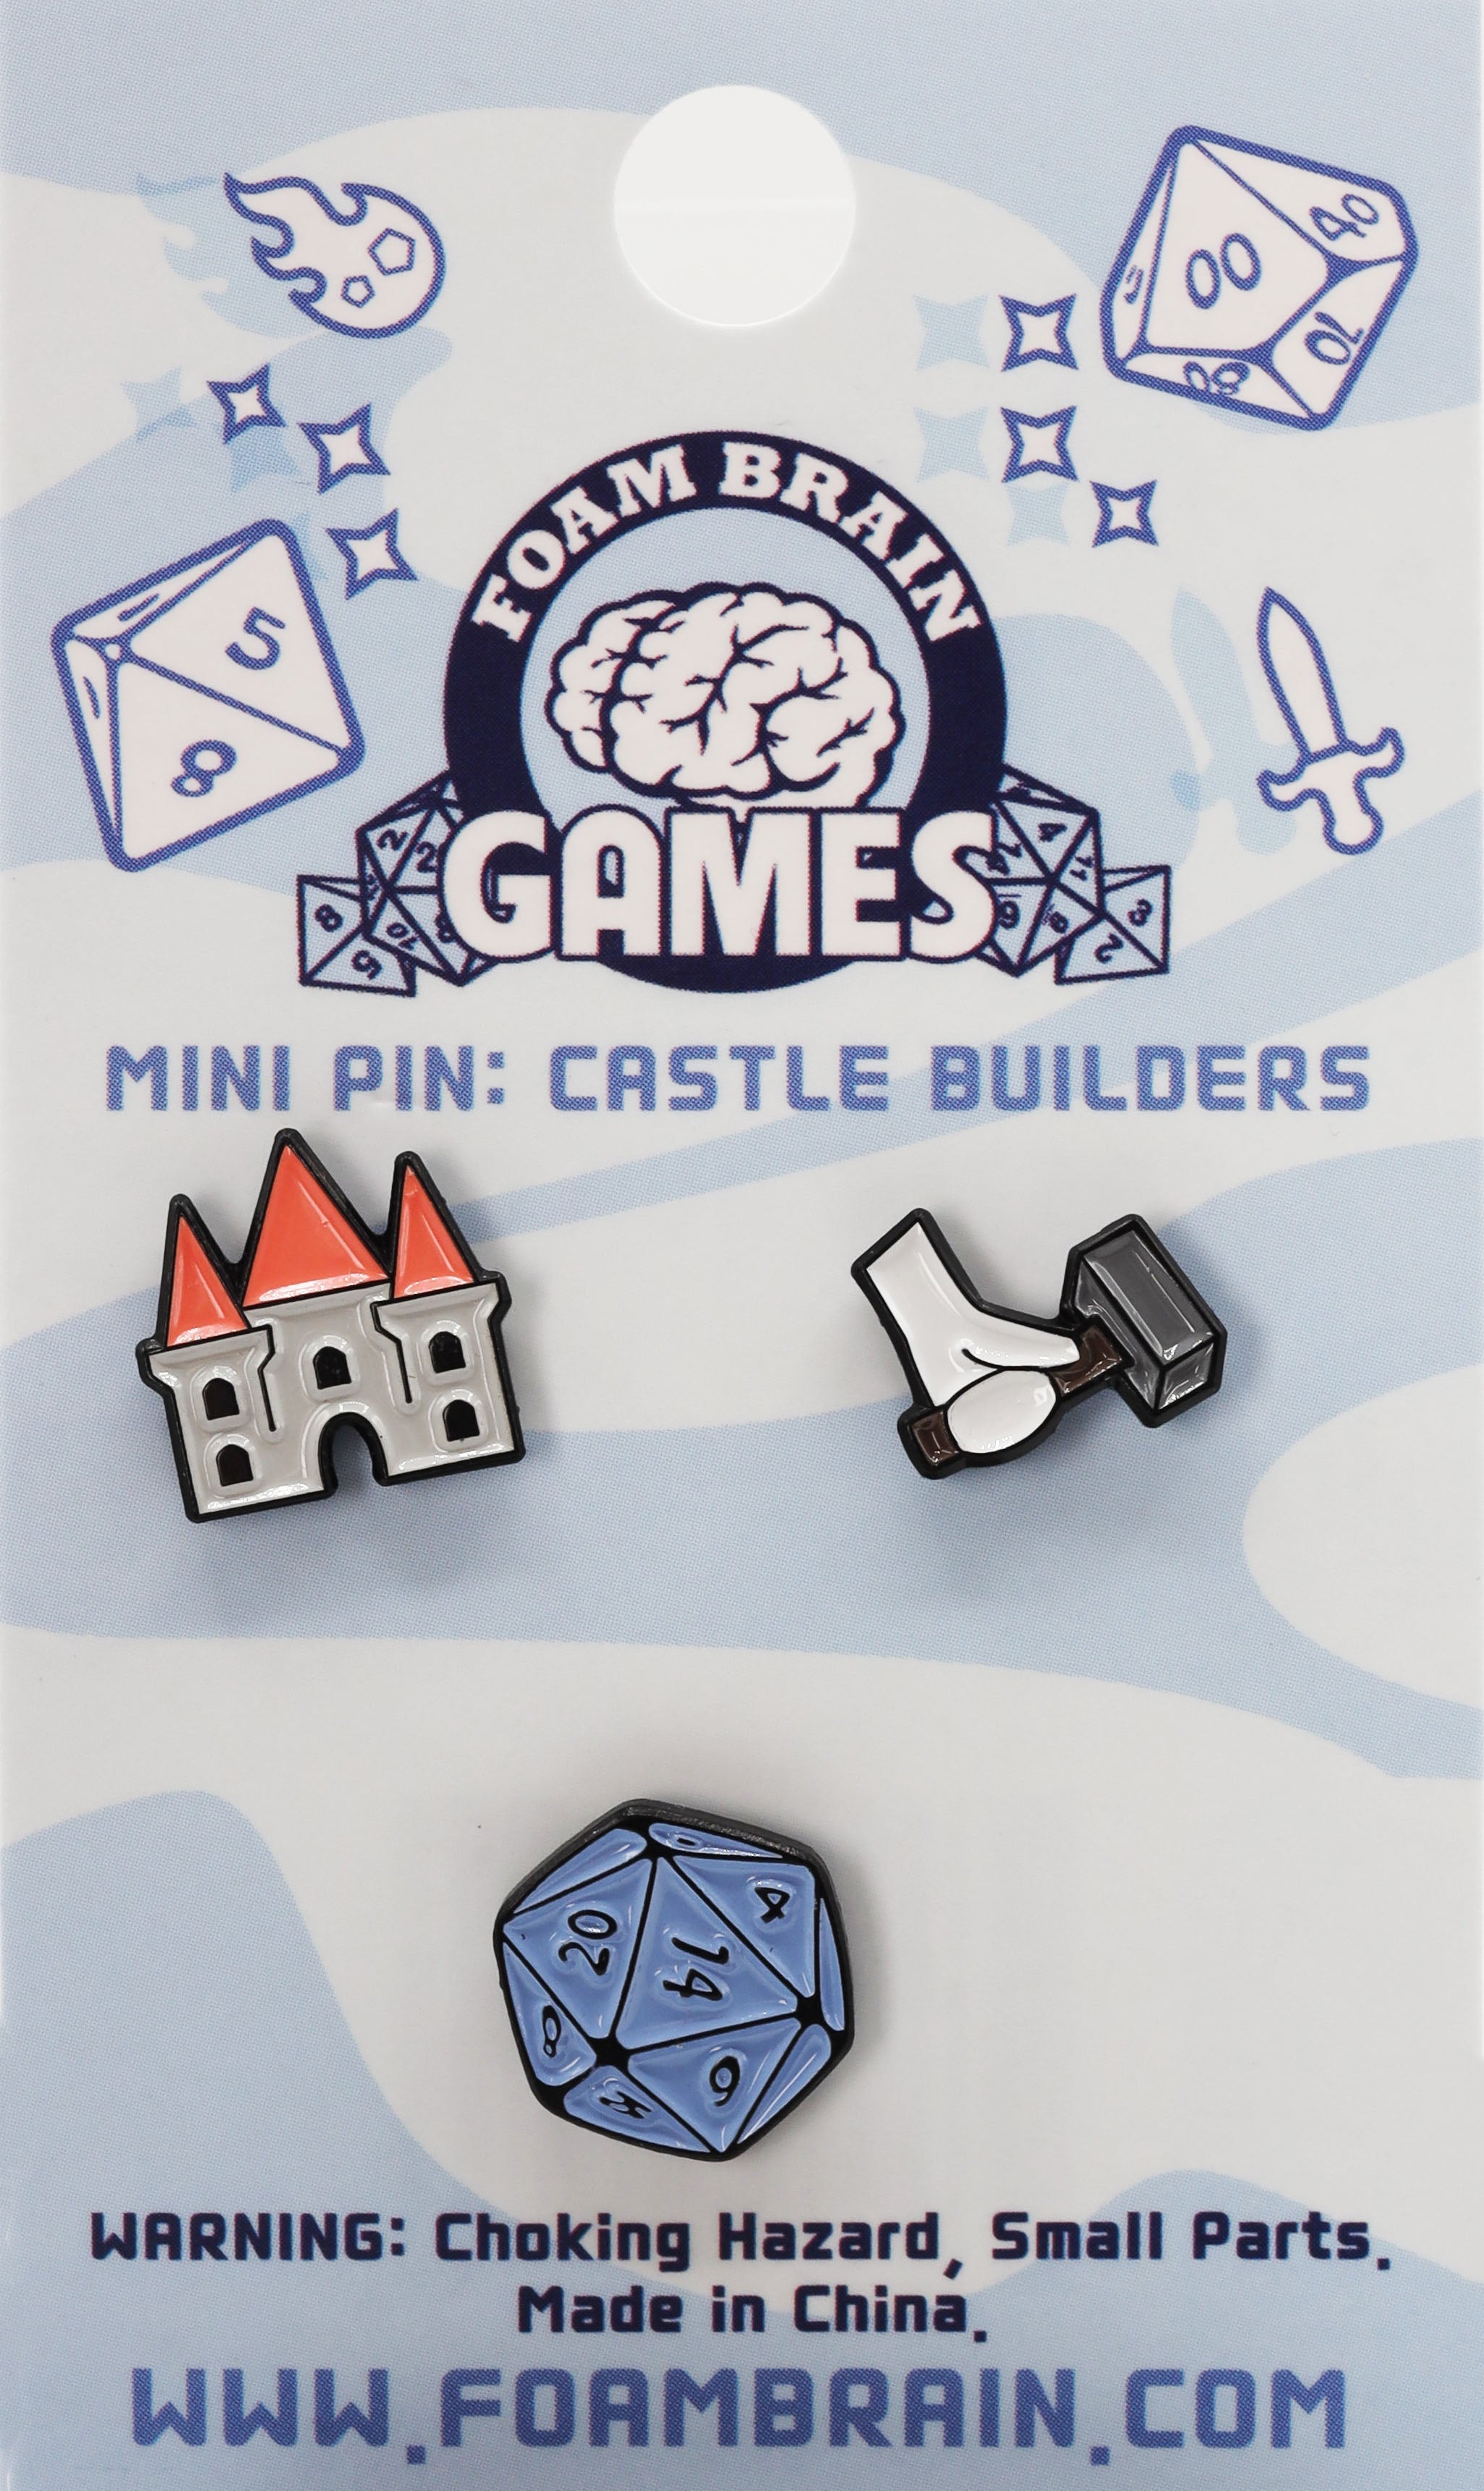 Mini Pins: Castle Builders Enamel Pin Foam Brain Games | D20 Games